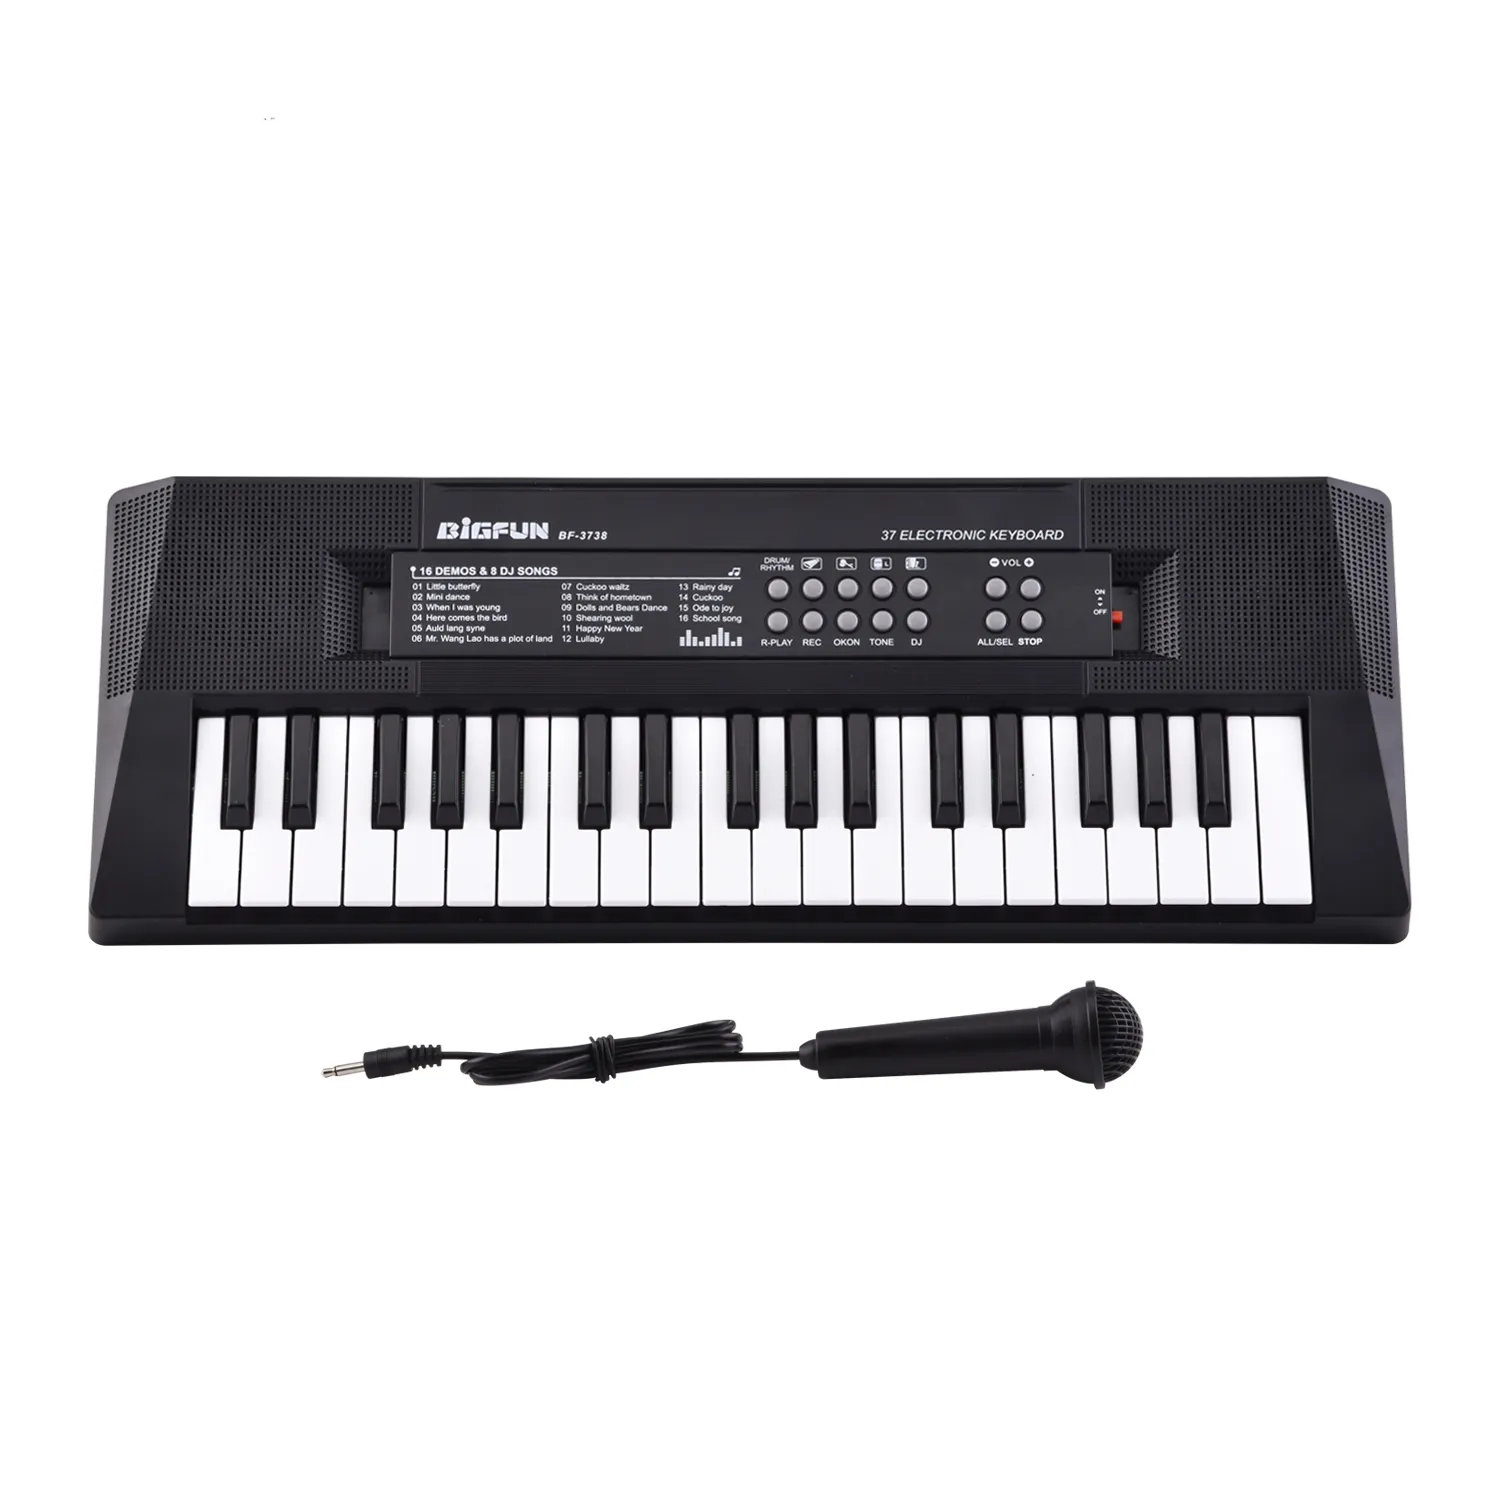 BF-3738 новейший игрушечный электронный орган, 37 клавиш, синтезатор пианино, Teclados, мини-музыкальная клавиатура, игрушка, музыкальный инструмент для детей